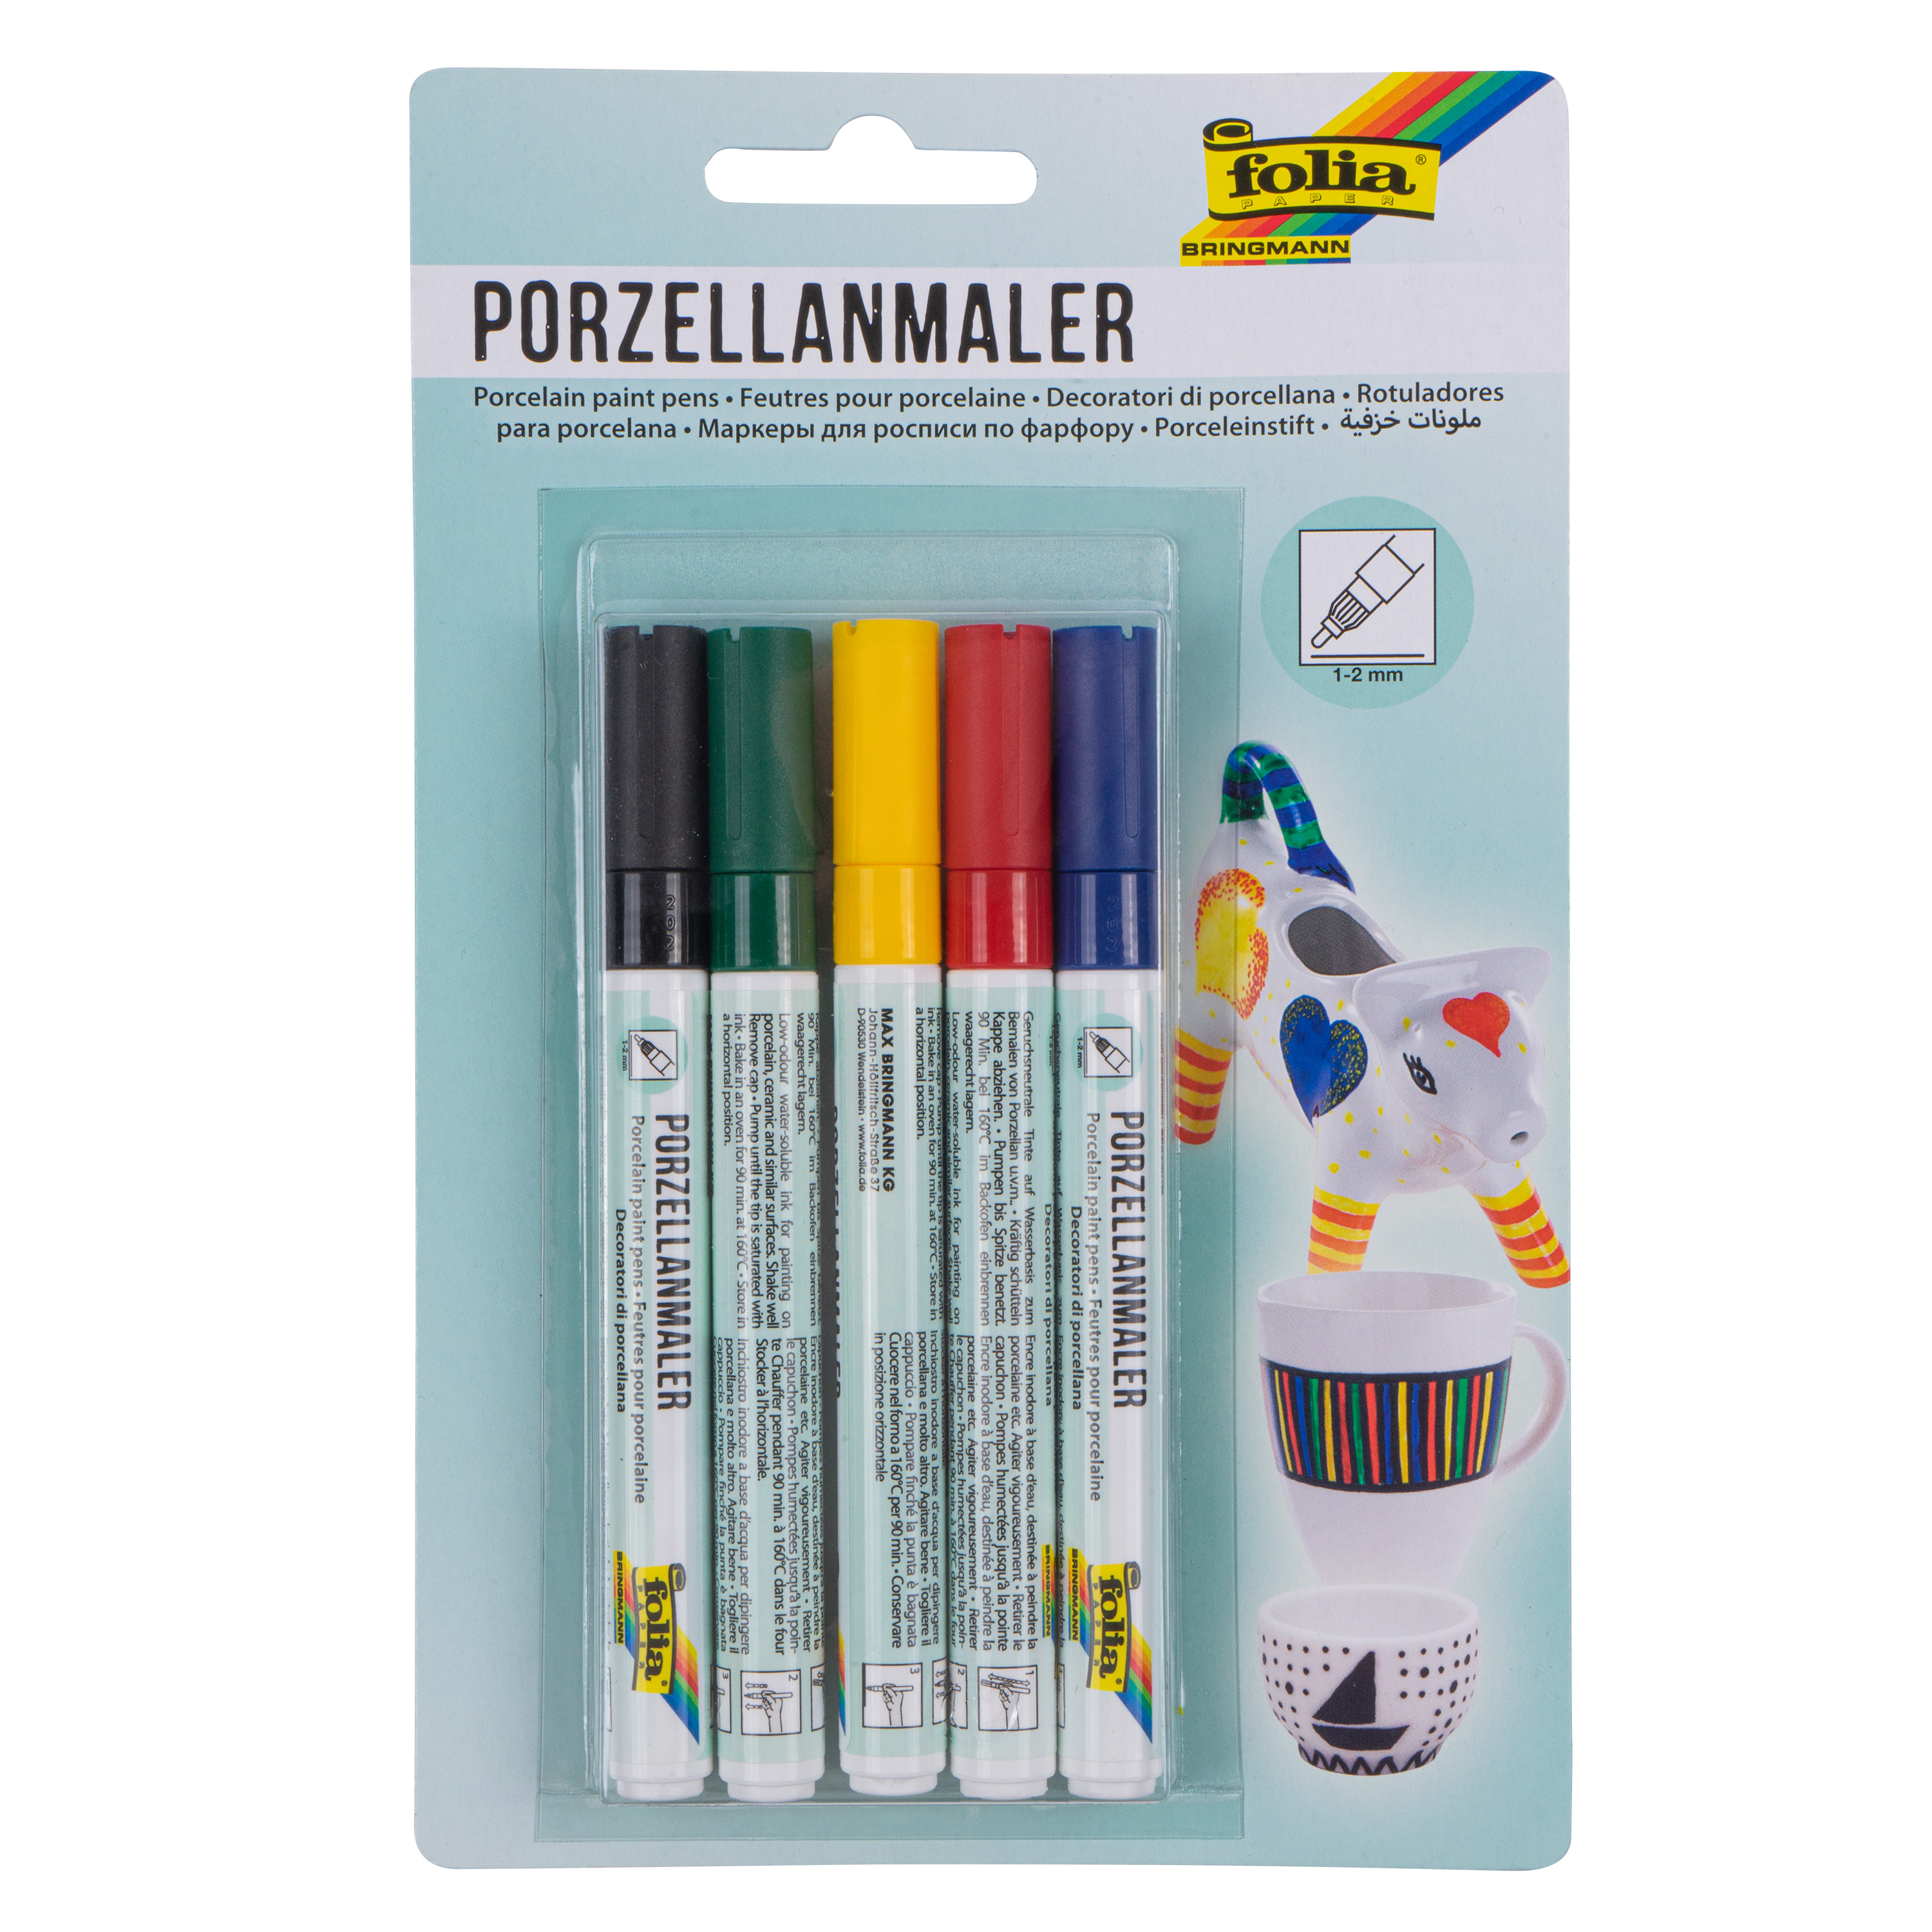 Porzellanmaler, 5 Stifte in 5 Farben